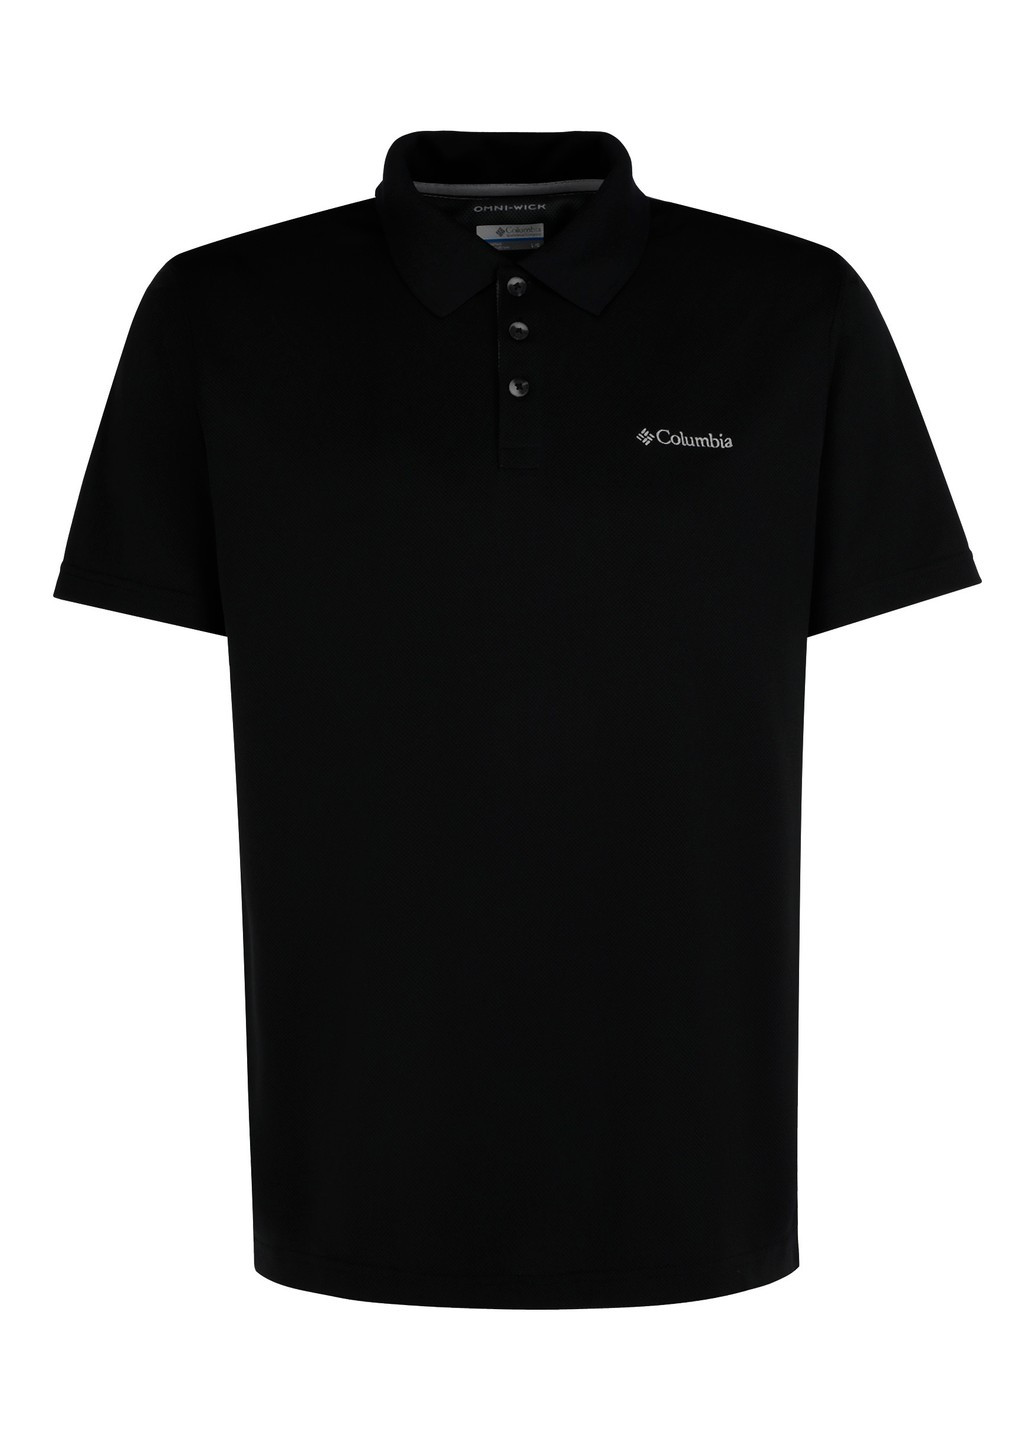 Черная футболка-1772055-010 m рубашка-поло мужская utilizer™ polo черный р.m для мужчин Columbia